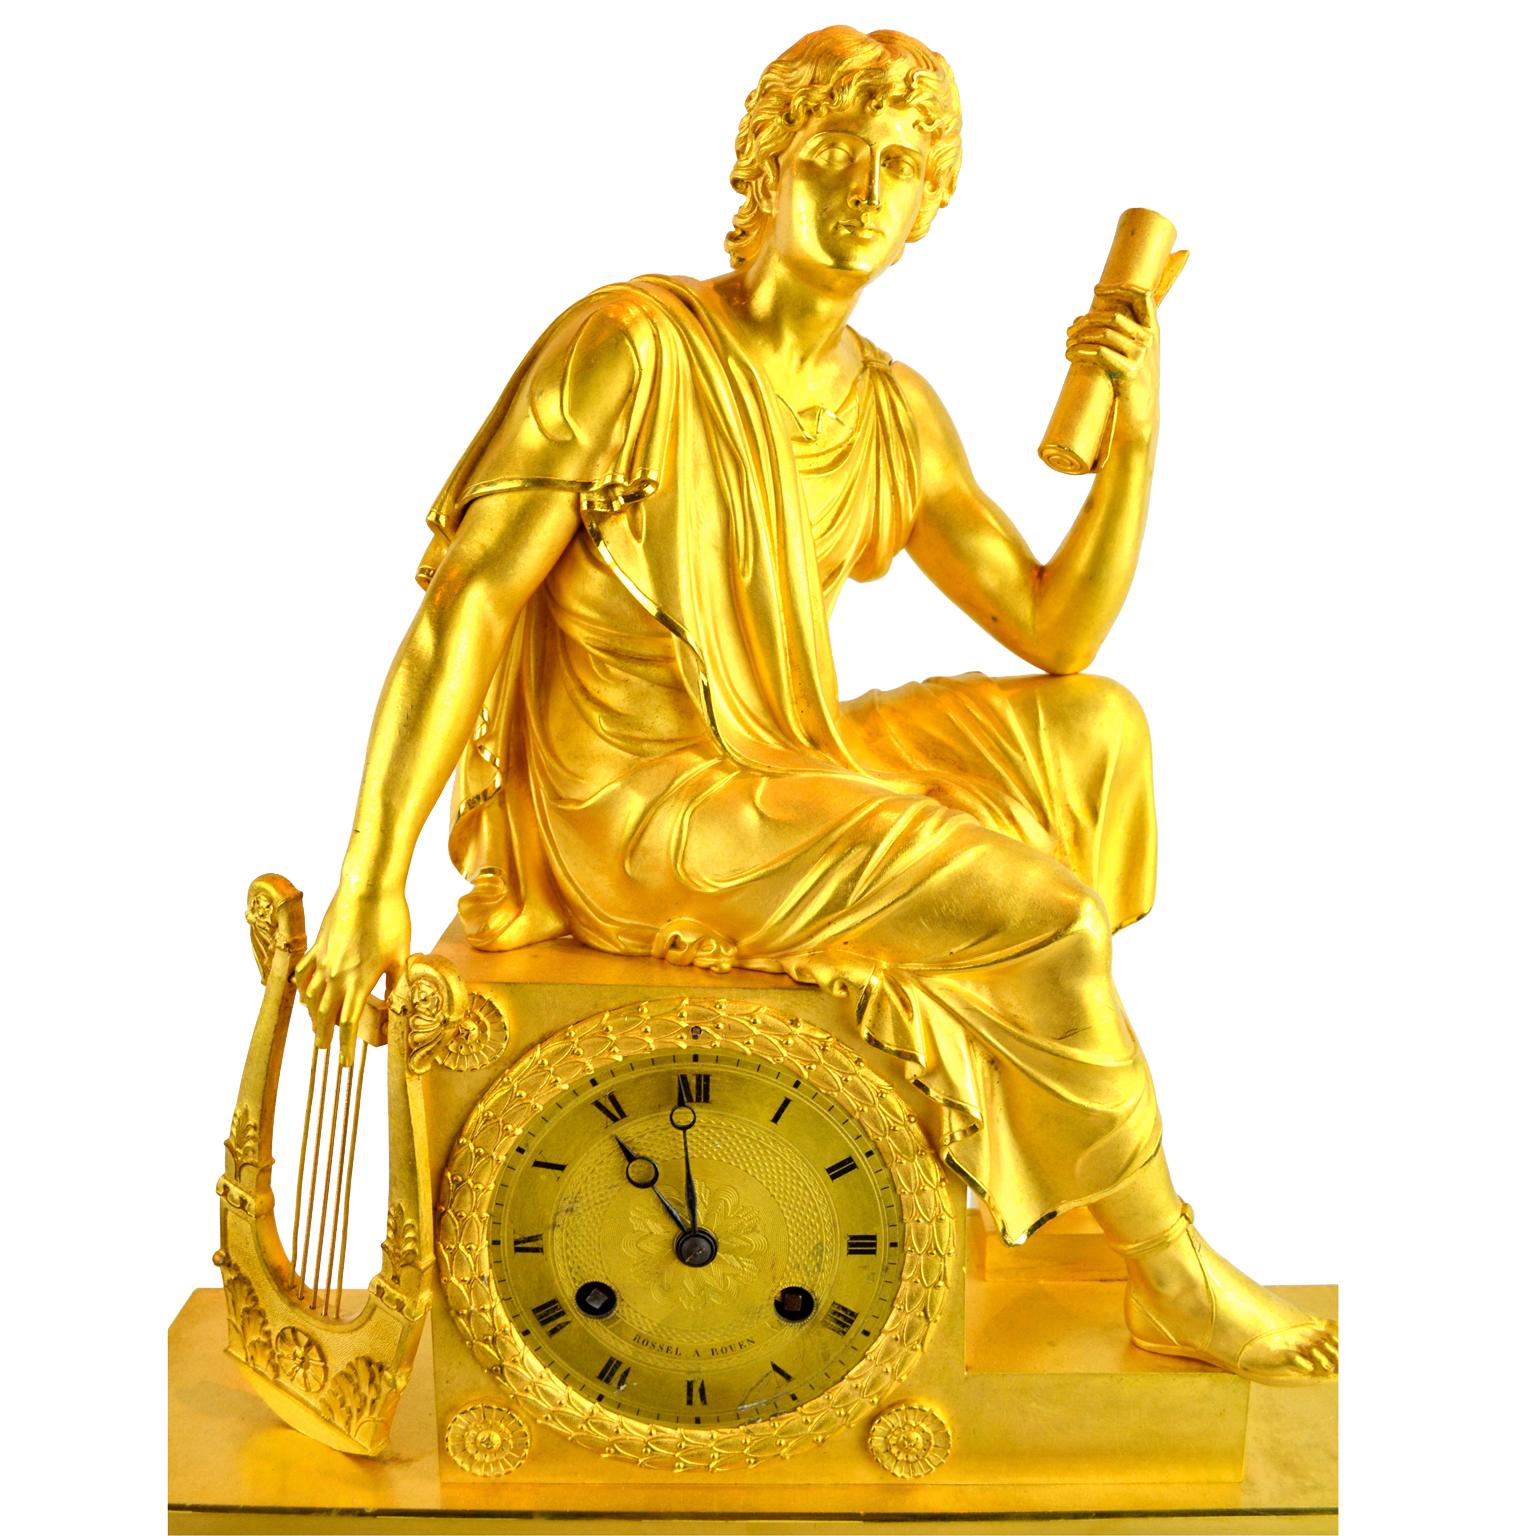 Pendule figurative de l'Empire français représentant un jeune Romain tenant un parchemin en bronze doré montrant un jeune assis, drapé de façon classique, tenant une lyre dans une main et un parchemin dans l'autre. La partie inférieure rectangulaire